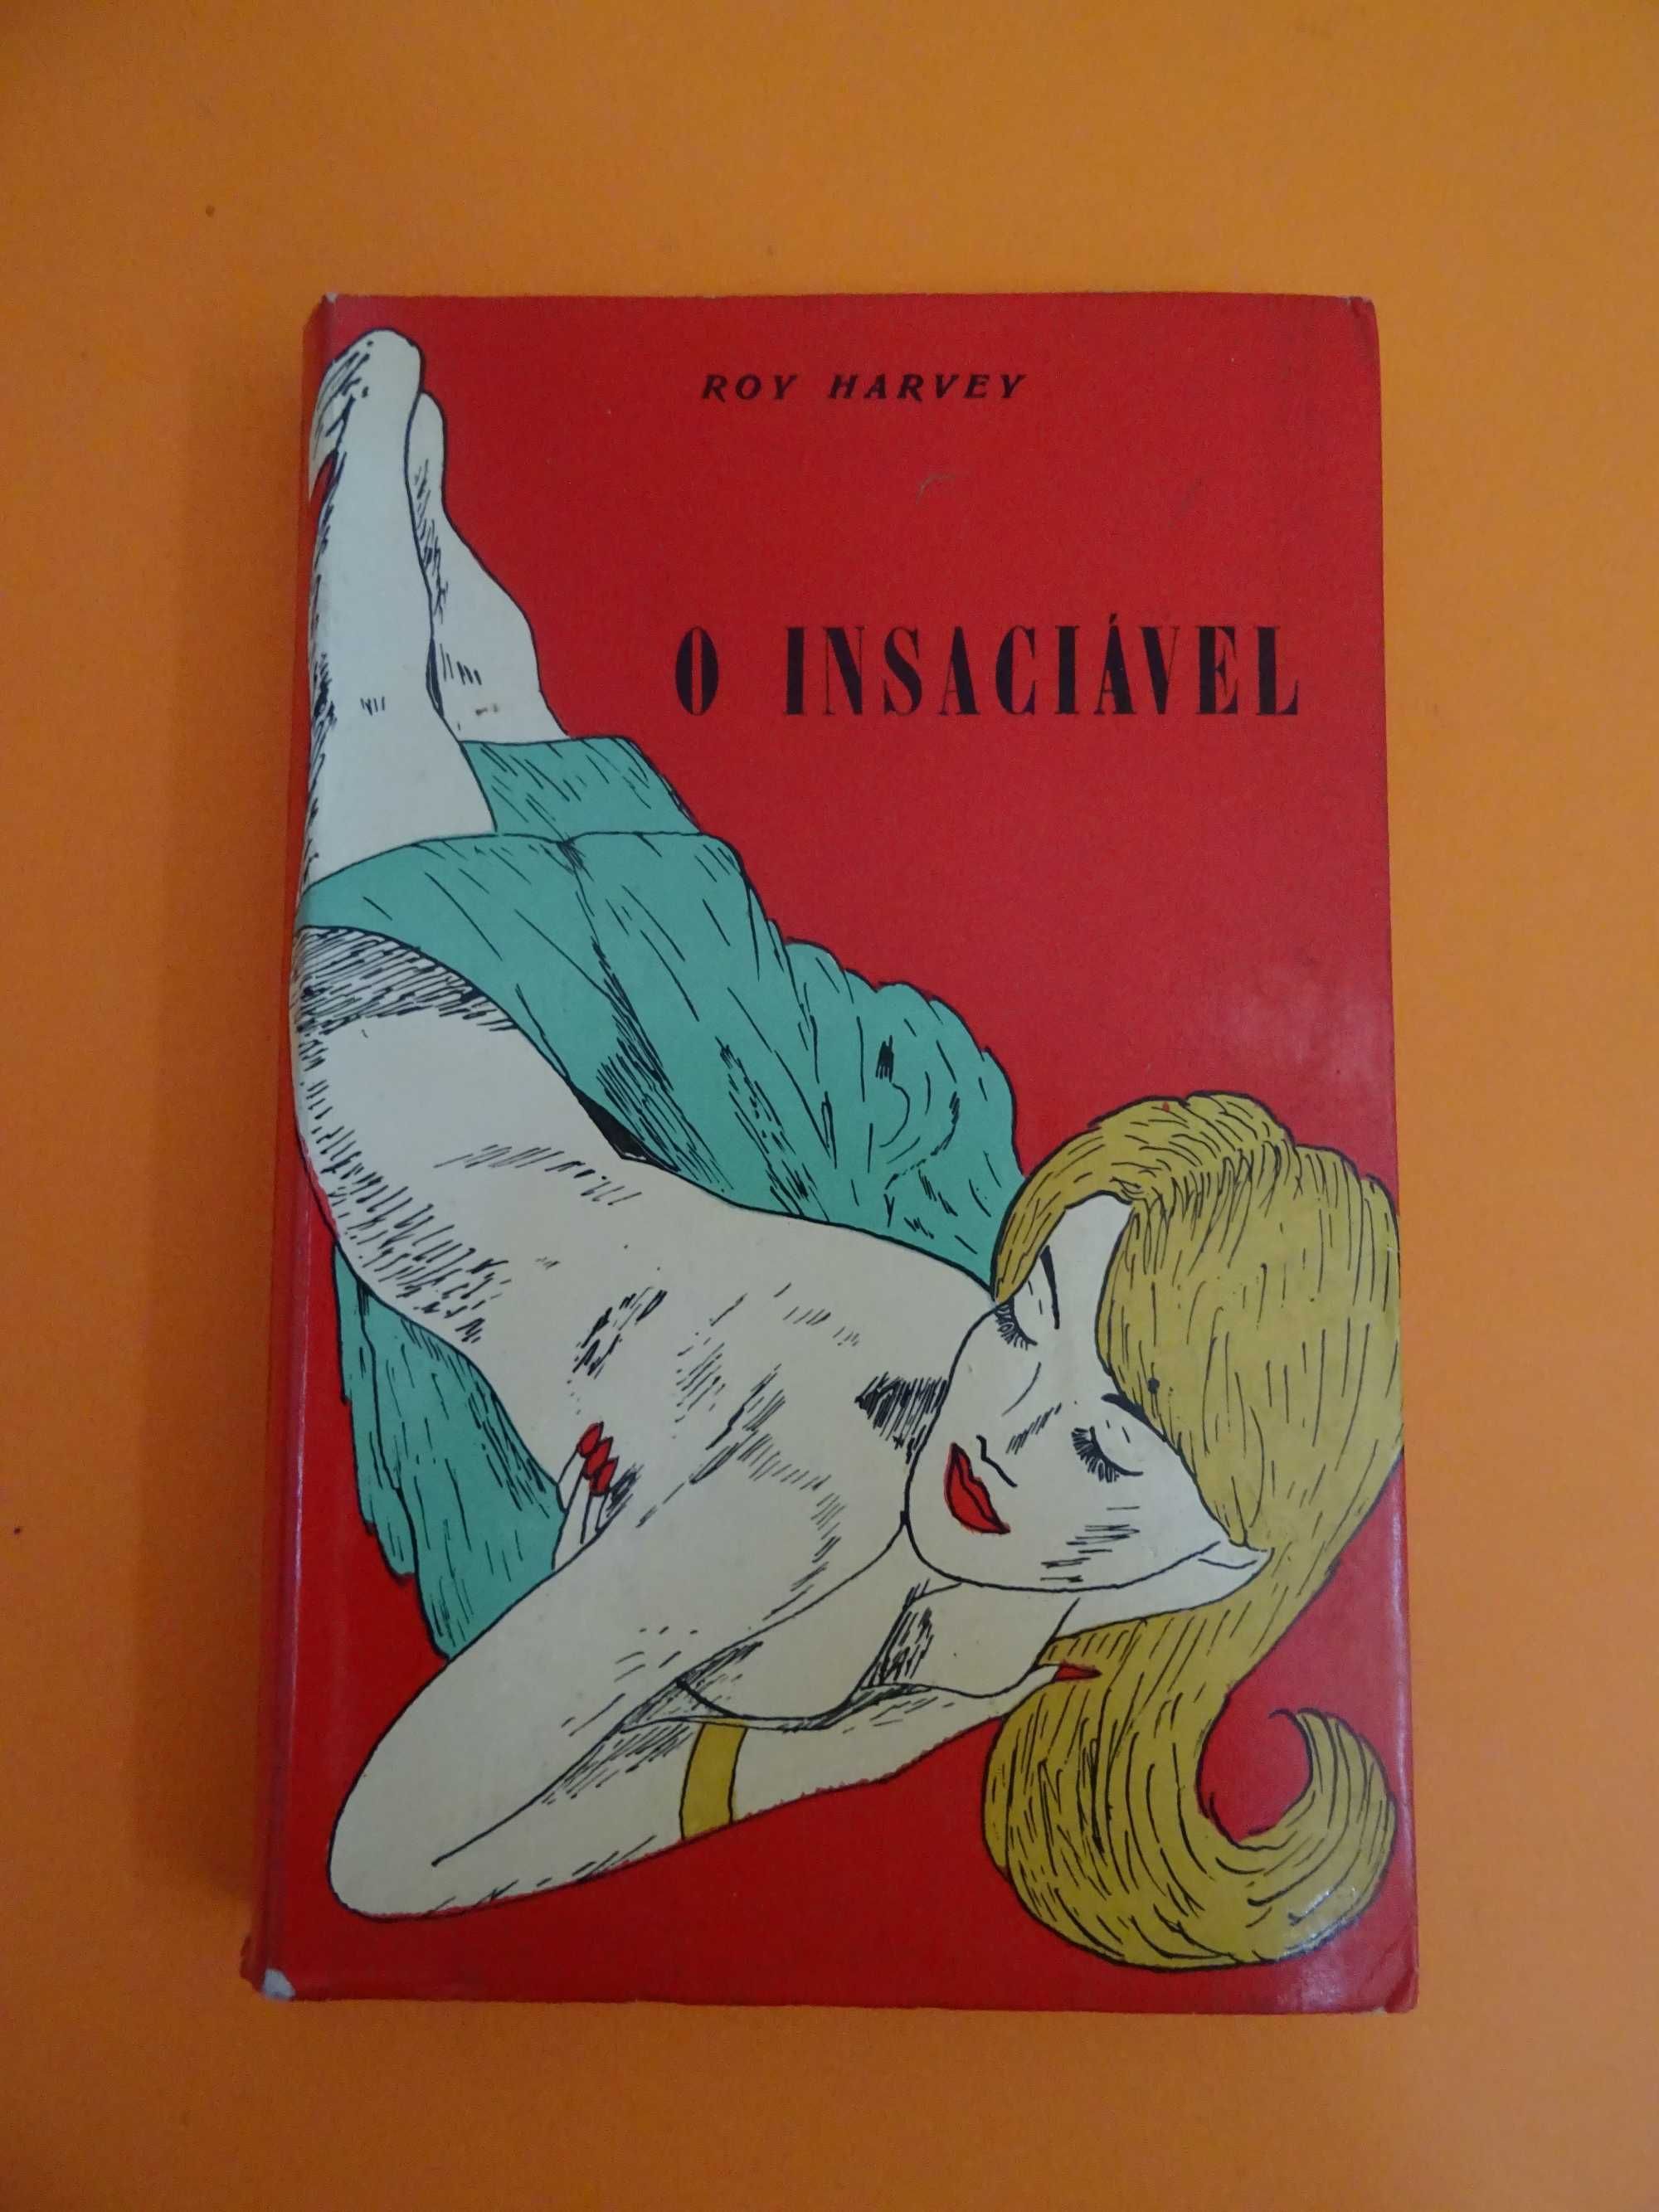 O Insaciável – nº 10 - Roy Harvey - Edição de 1965